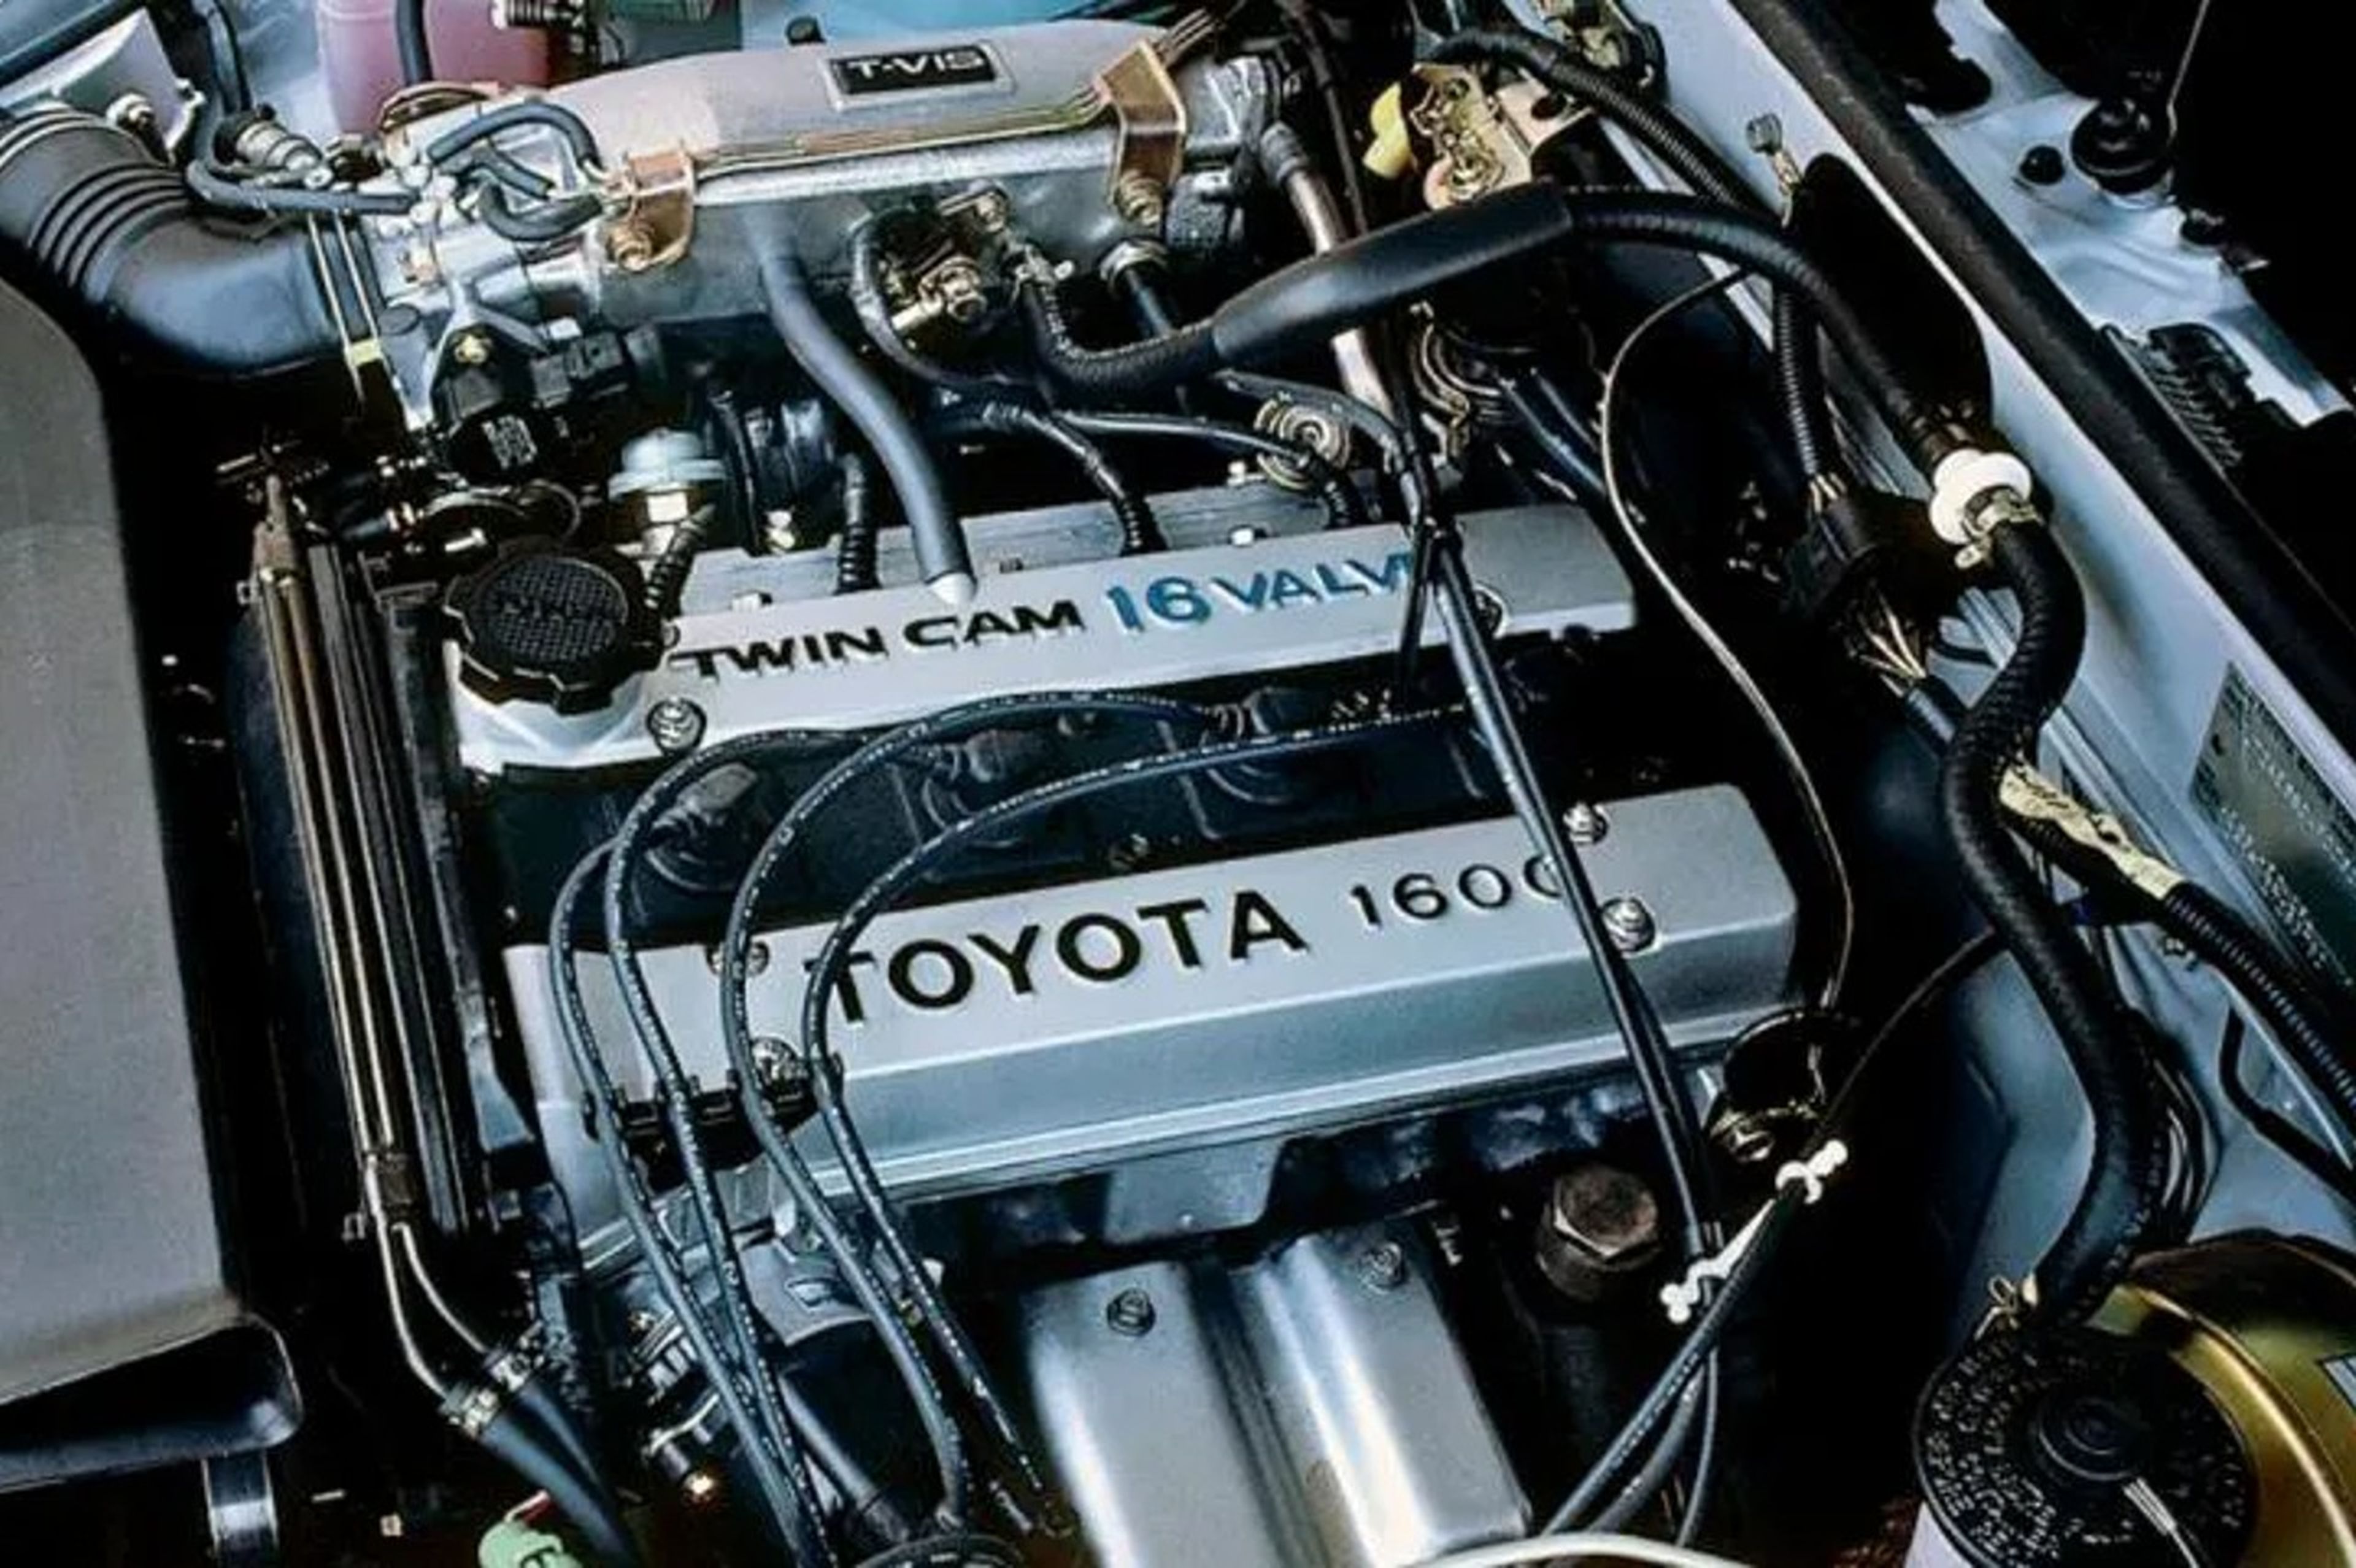 Historia del Toyota Sprinter Trueno